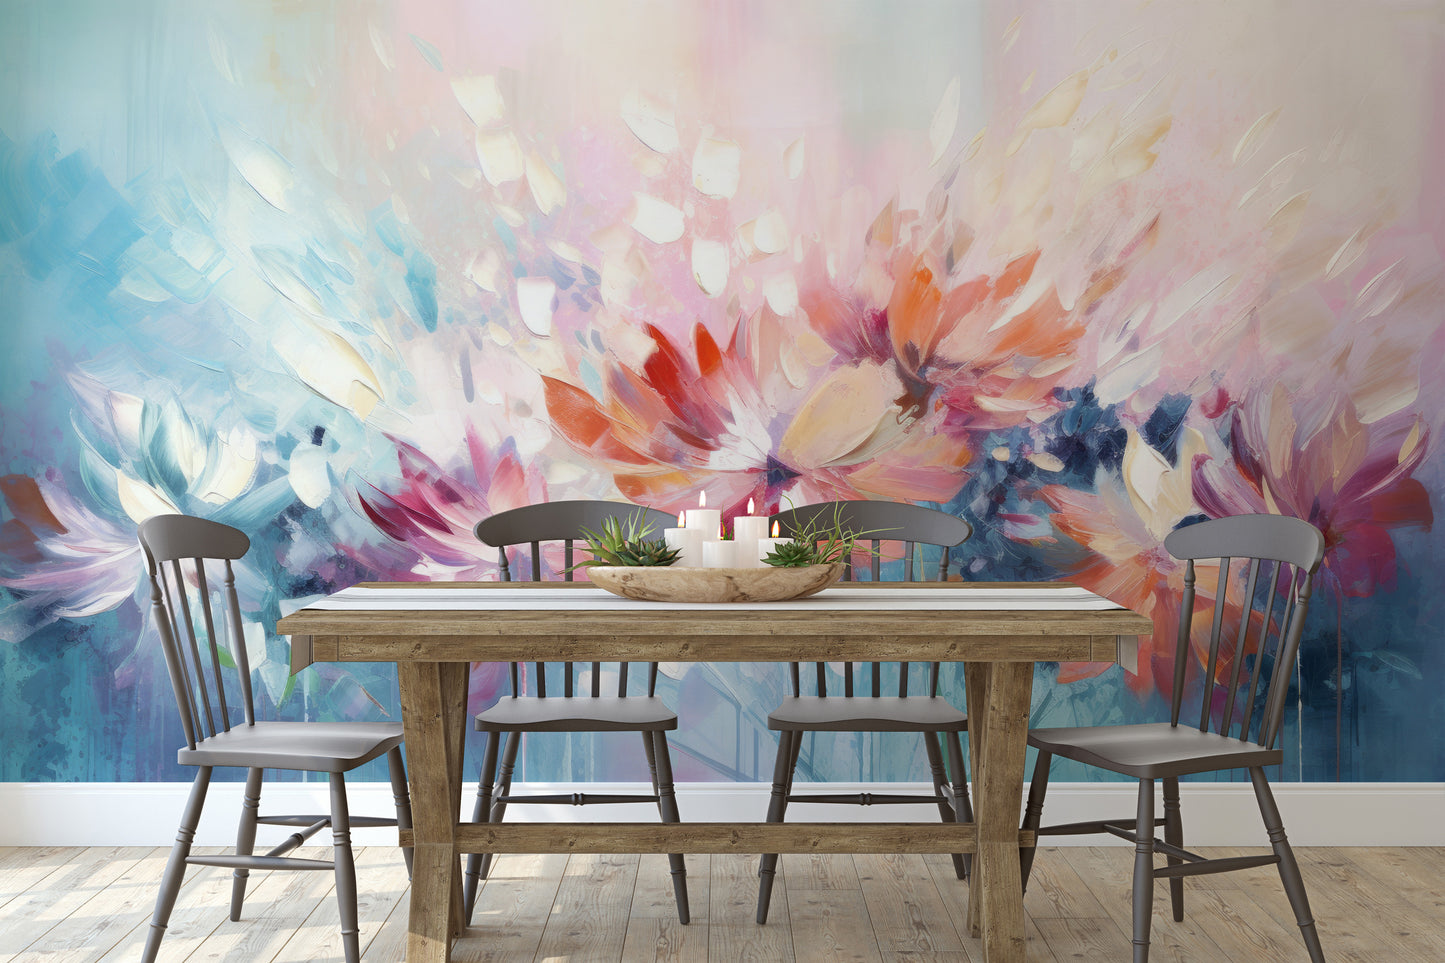 Wzór fototapety o nazwie Floral Watercolor Fantasy pokazanej w kontekście pomieszczenia.